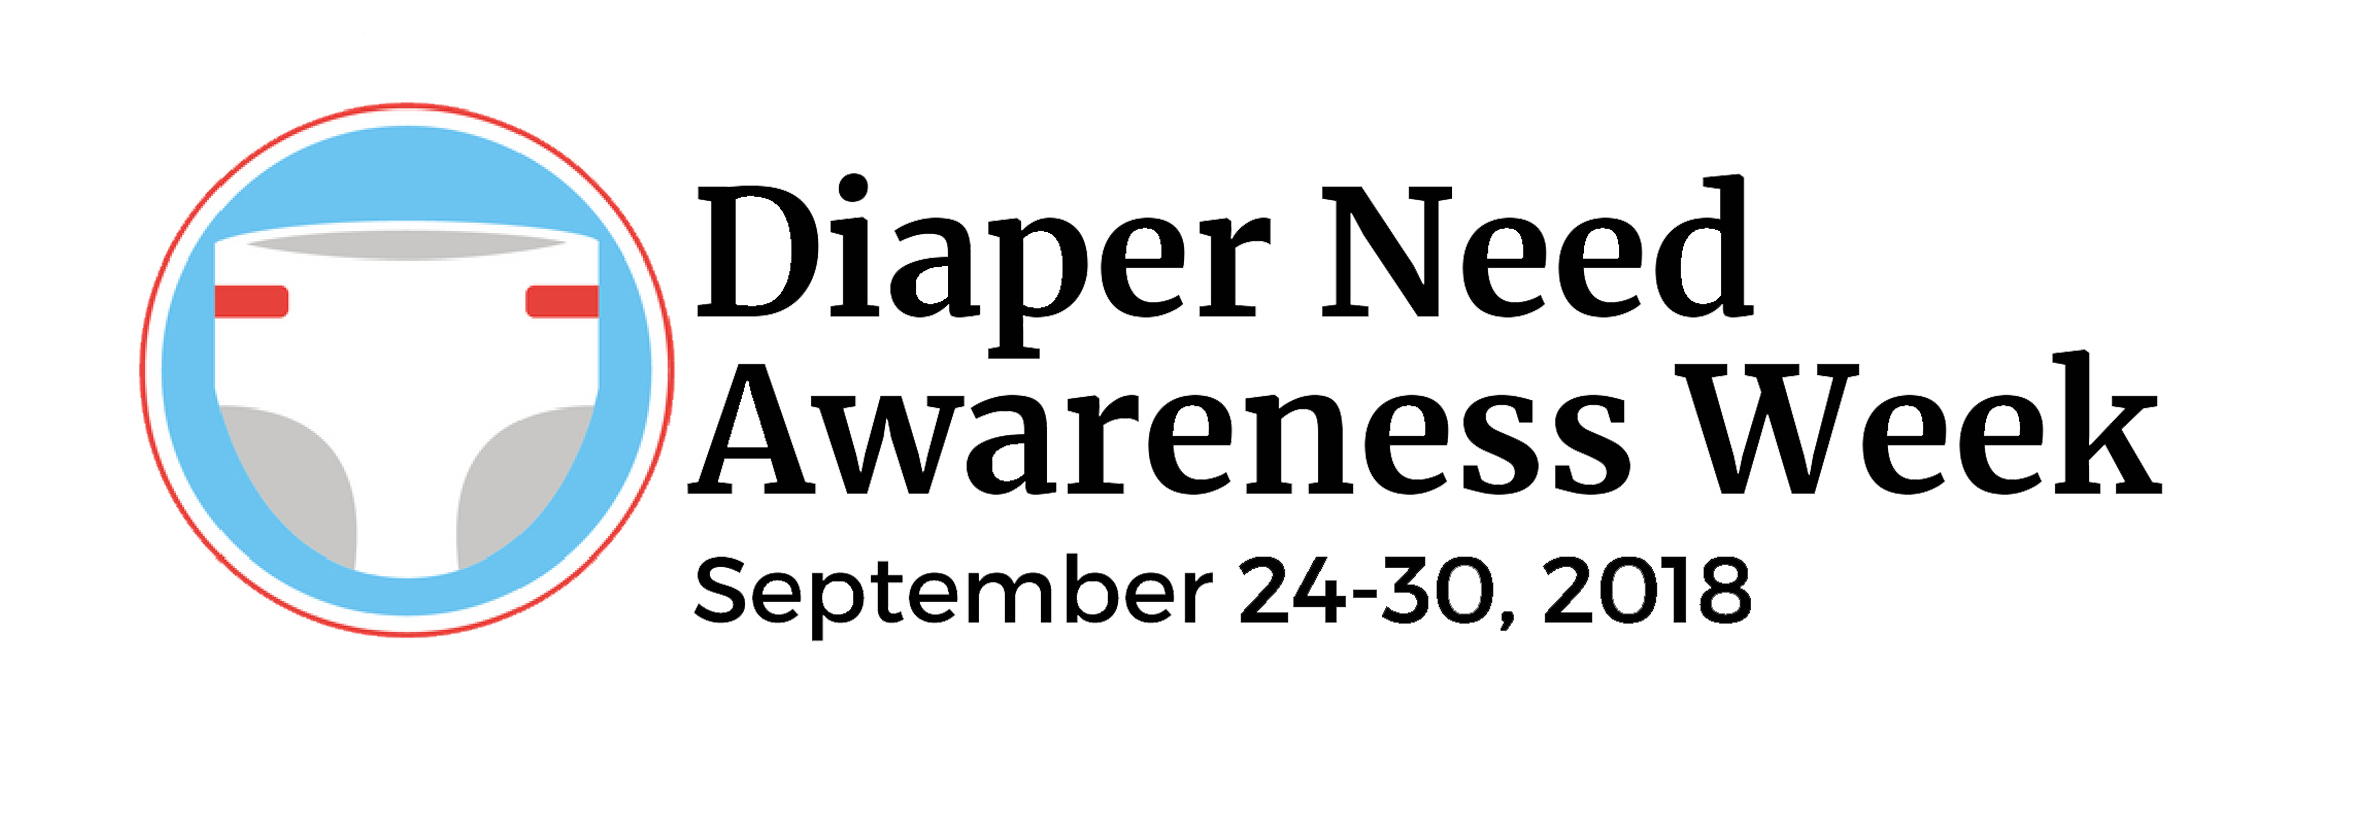 diaper need awareness week wisconsin